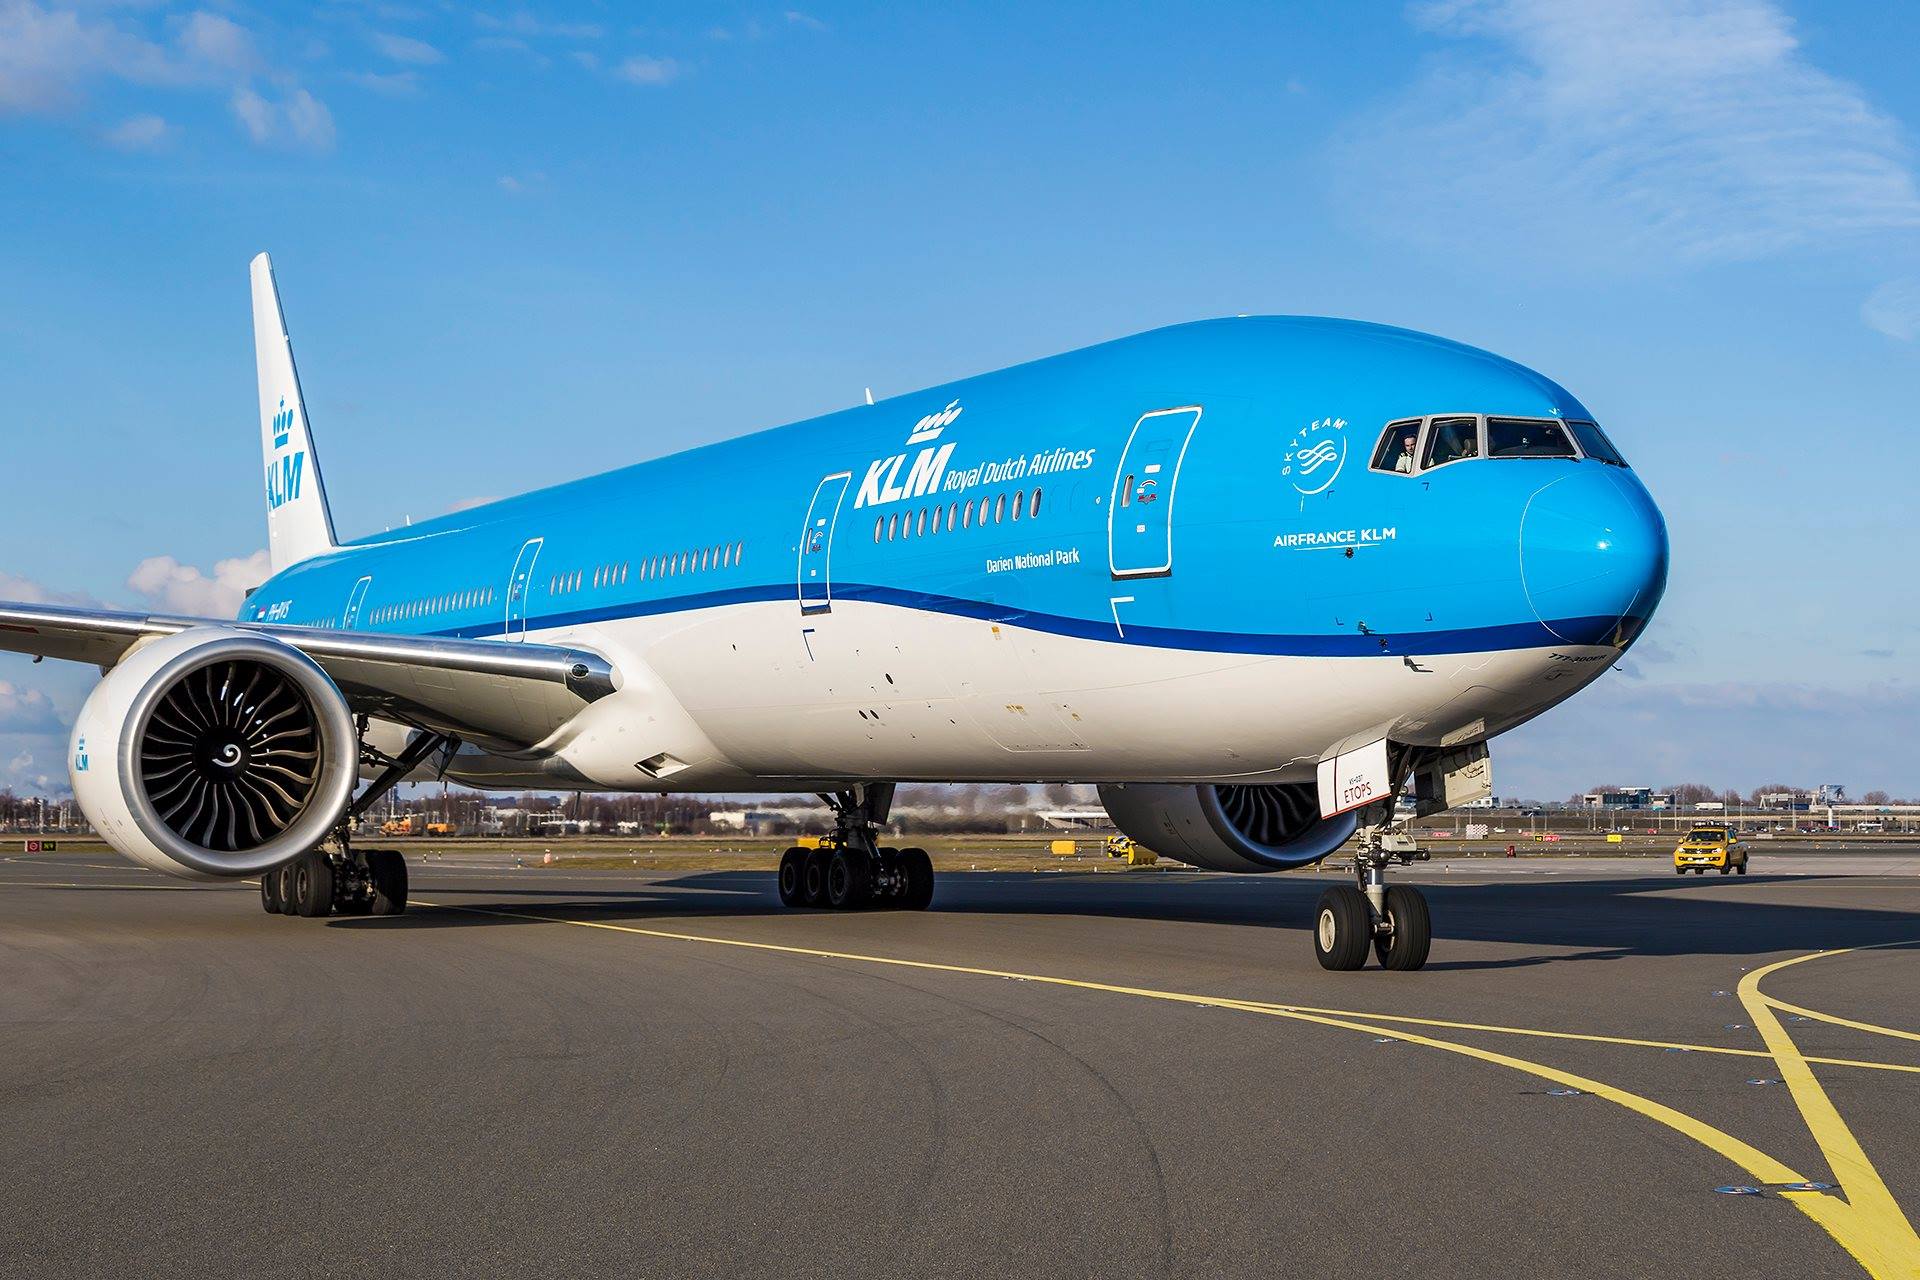 KLMオランダ航空、B777-300ERを2機追加発注することを発表 | sky 